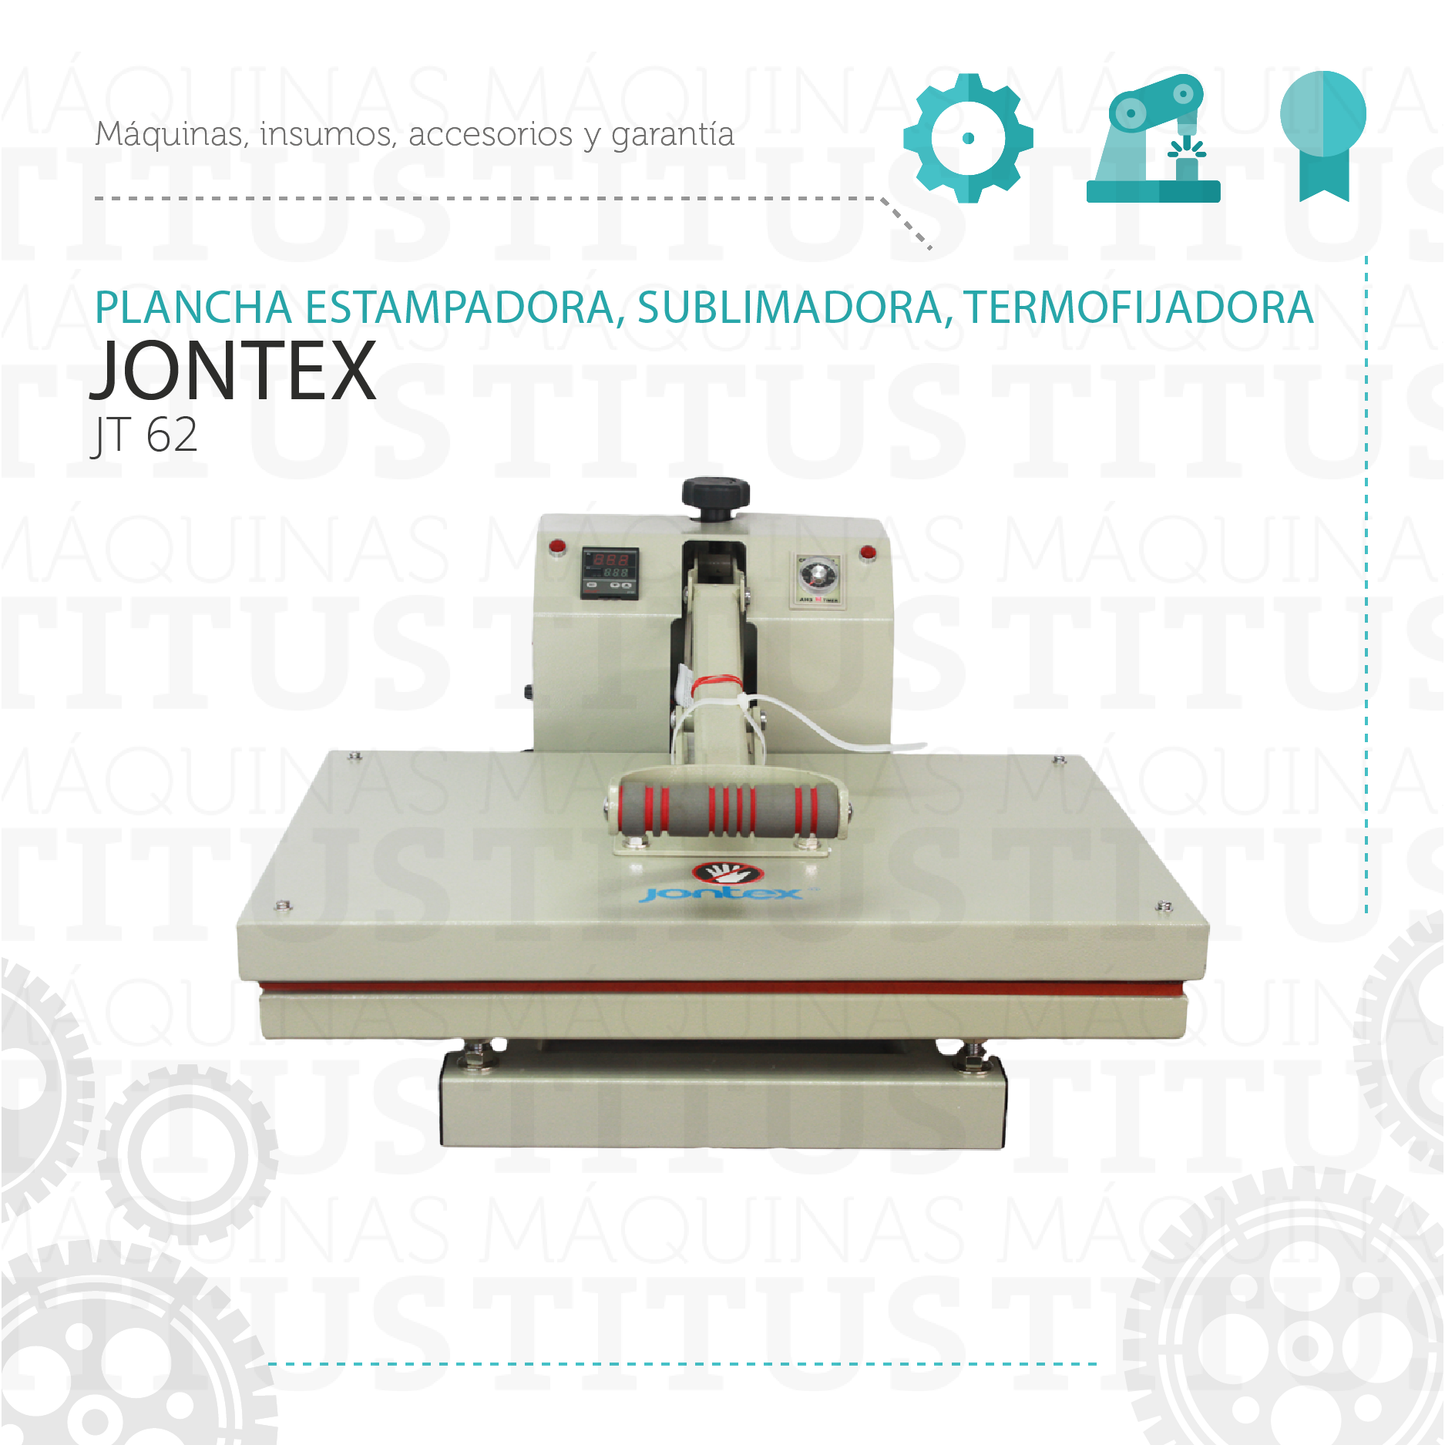 Plancha Estampadora Sublimadora Termofijadora Jontex JT 62 - Commercio